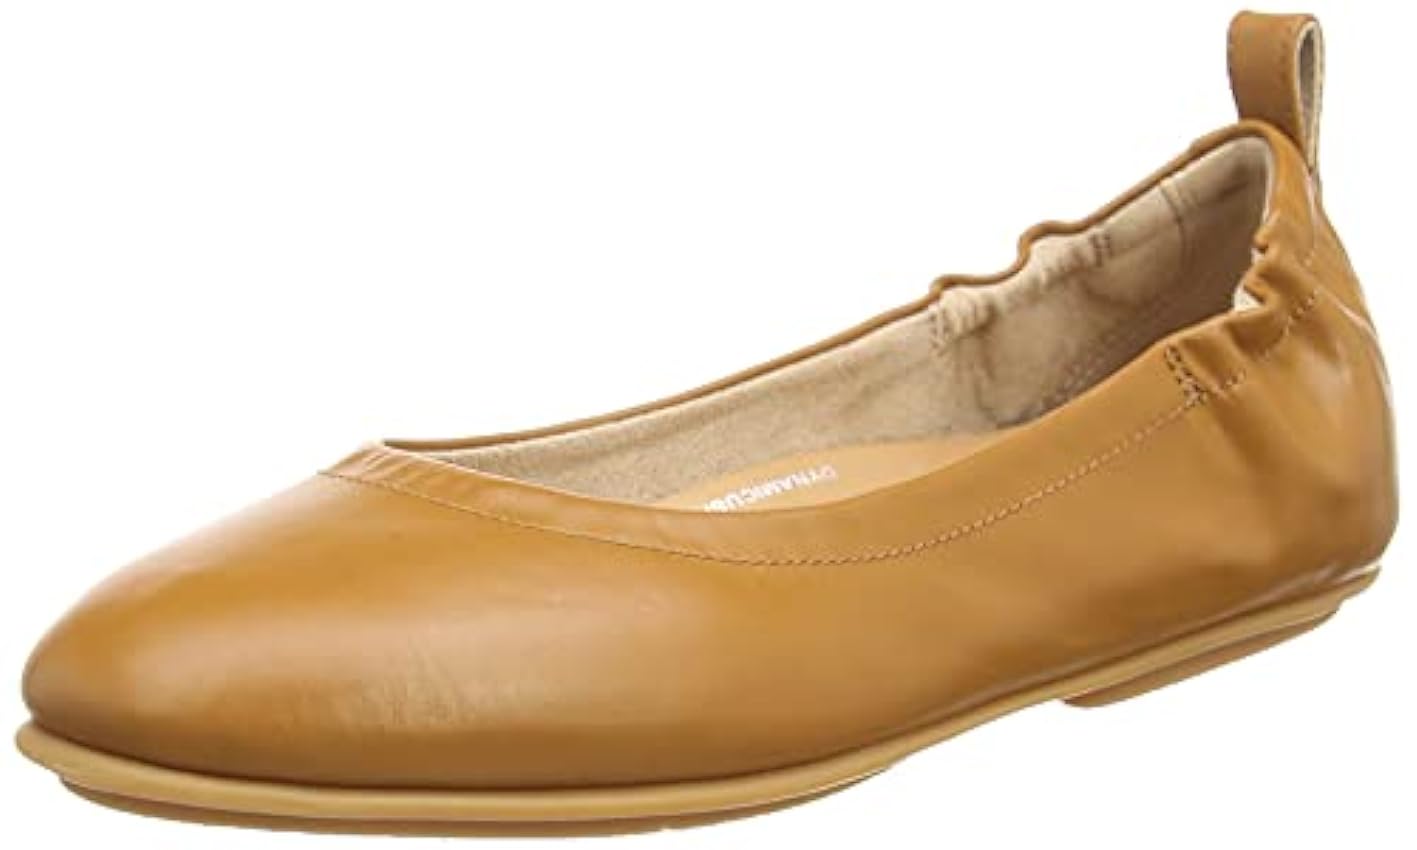 Fitflop Zapatos de Ballet de Cuero Suave Allegro, Tipo Mujer, Beige, 36.5 EU 9uM7b0Ef